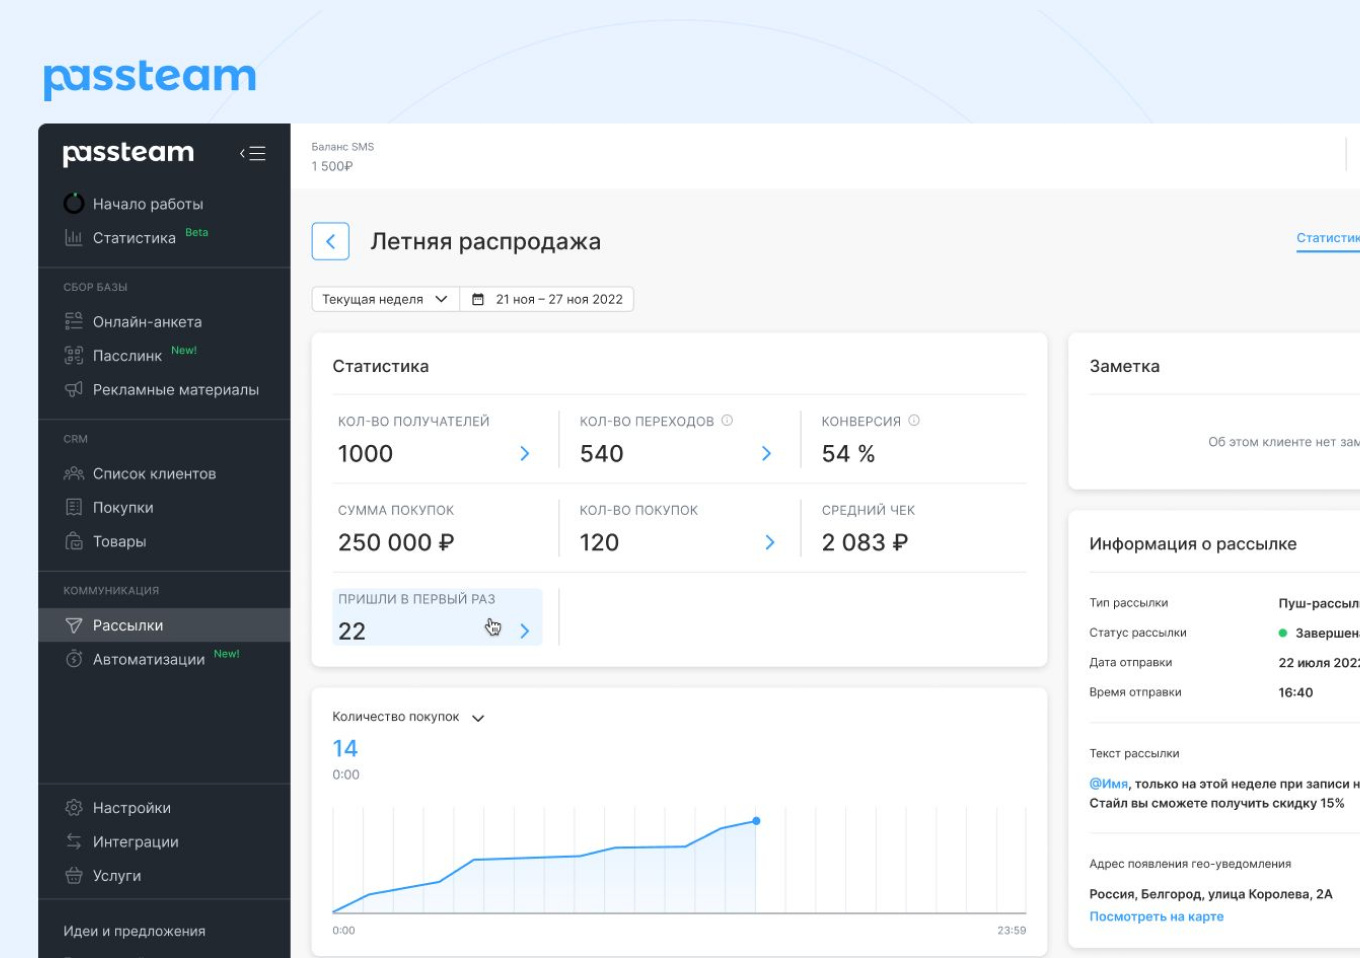 Интерфейс платформы passteam.ru